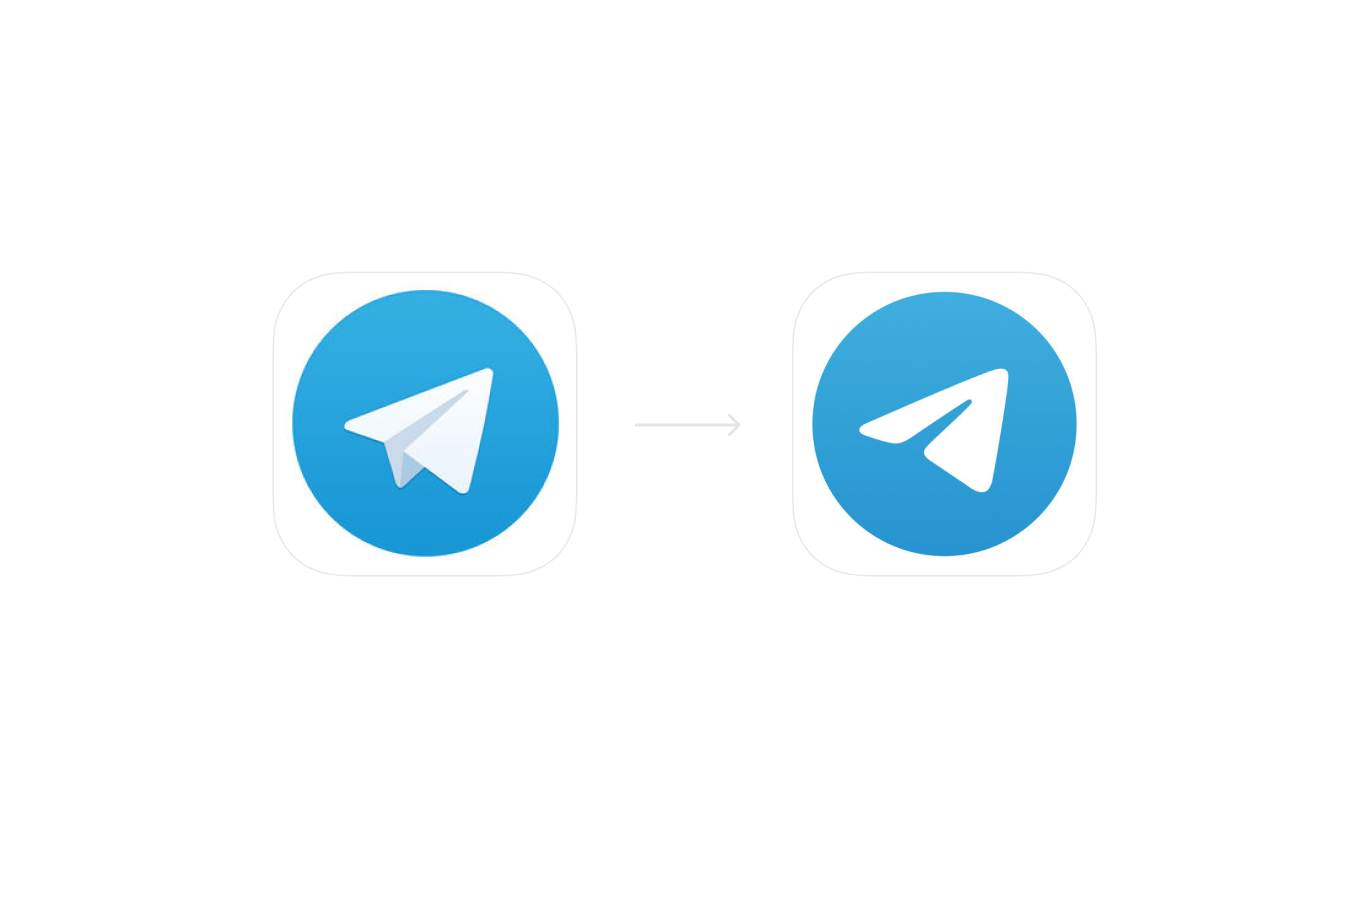 Telegram pictures. Значе телеграм. Иконка телеграмм. Логотип Telegram. Пиктограмма телеграмм.